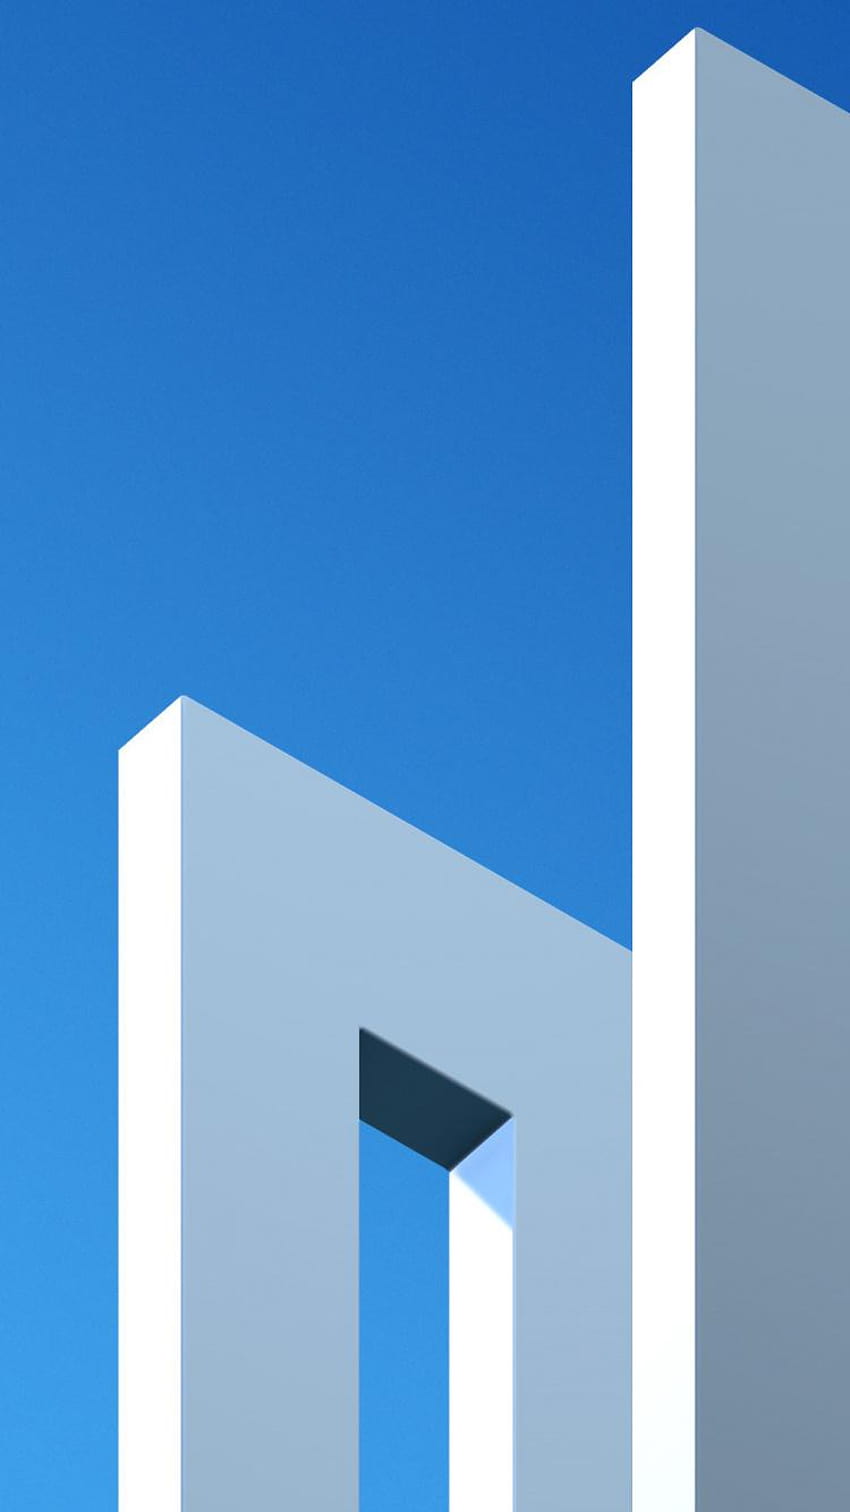 Arquitectura minimalista, moderna y simple, cielo azul, minimalista simple fondo de pantalla del teléfono